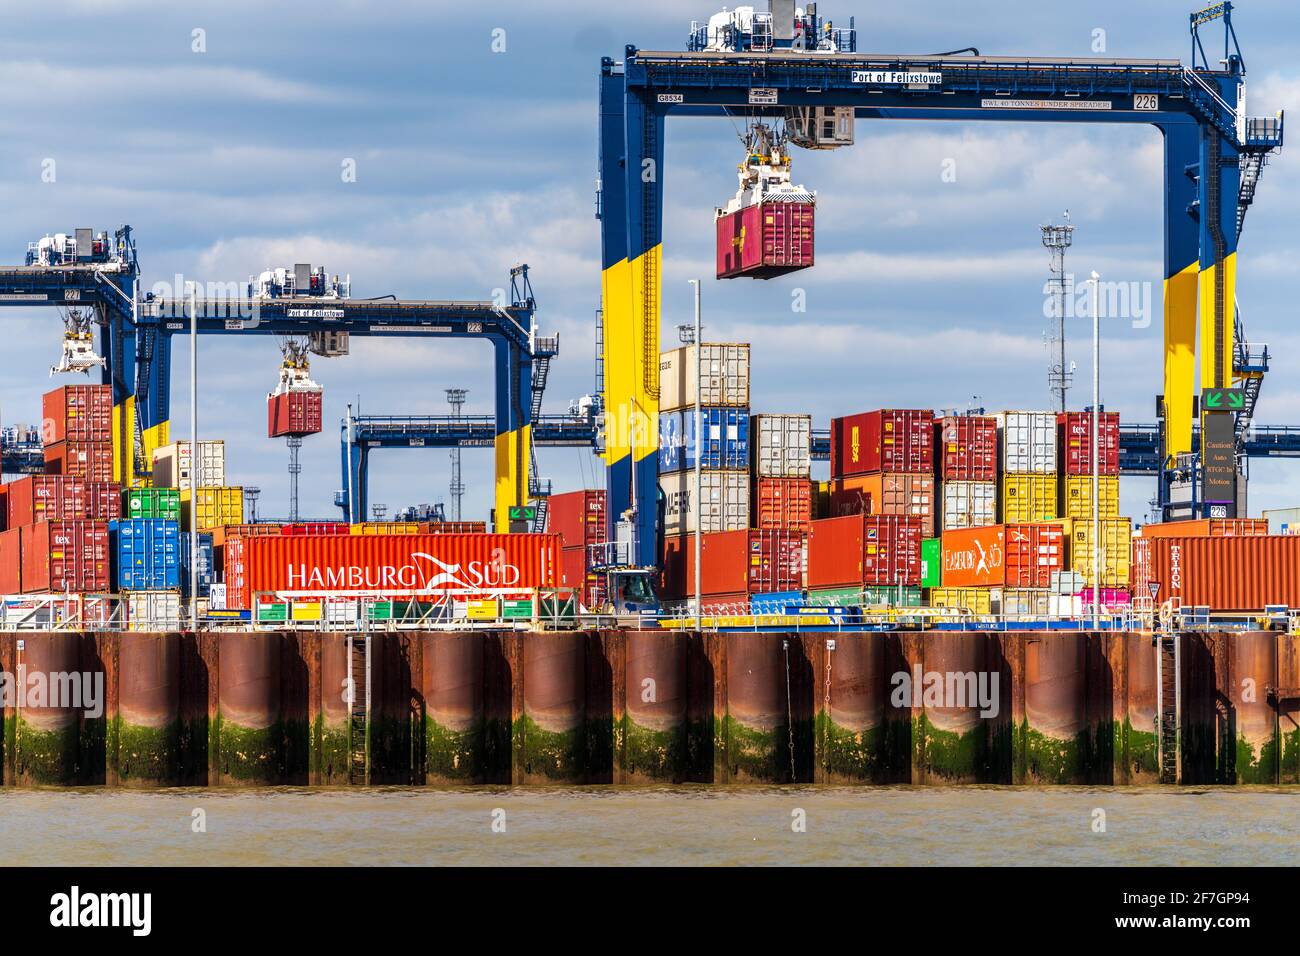 Global Britain UK Trade, UK Container Trade - UK Container Port - conteneurs d'expédition stockés au port Felixstowe, le plus grand port de conteneurs du Royaume-Uni Banque D'Images